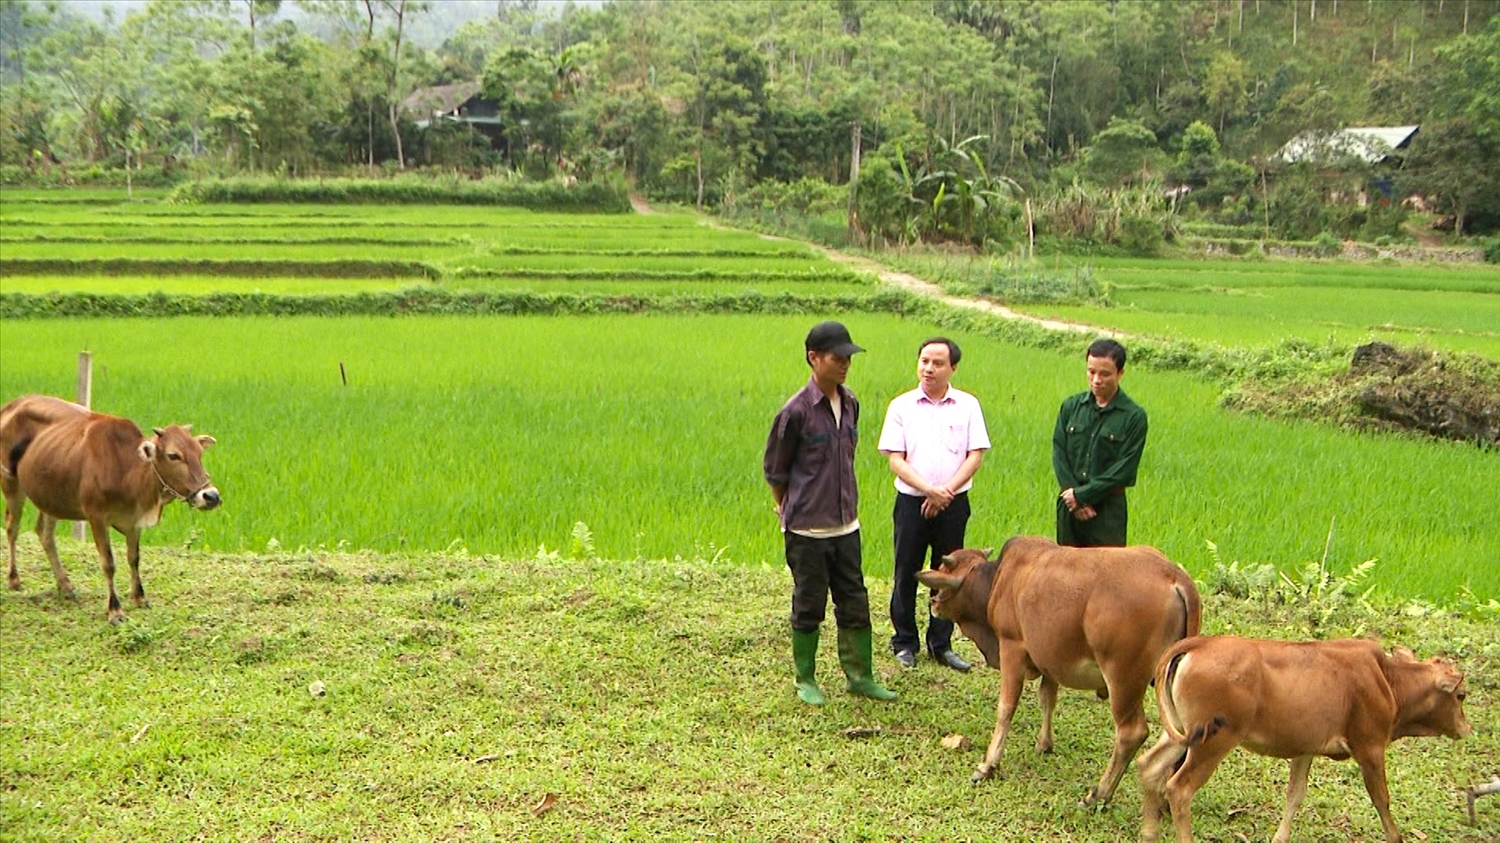 Nhờ nguồn vốn vay từ tín dụng chính sách xã hội, hộ vay Chẩu Văn Binh ở thôn Nà Muông xã Khuôn Hà, huyện Lâm Bình đã vươn lên thoát nghèo